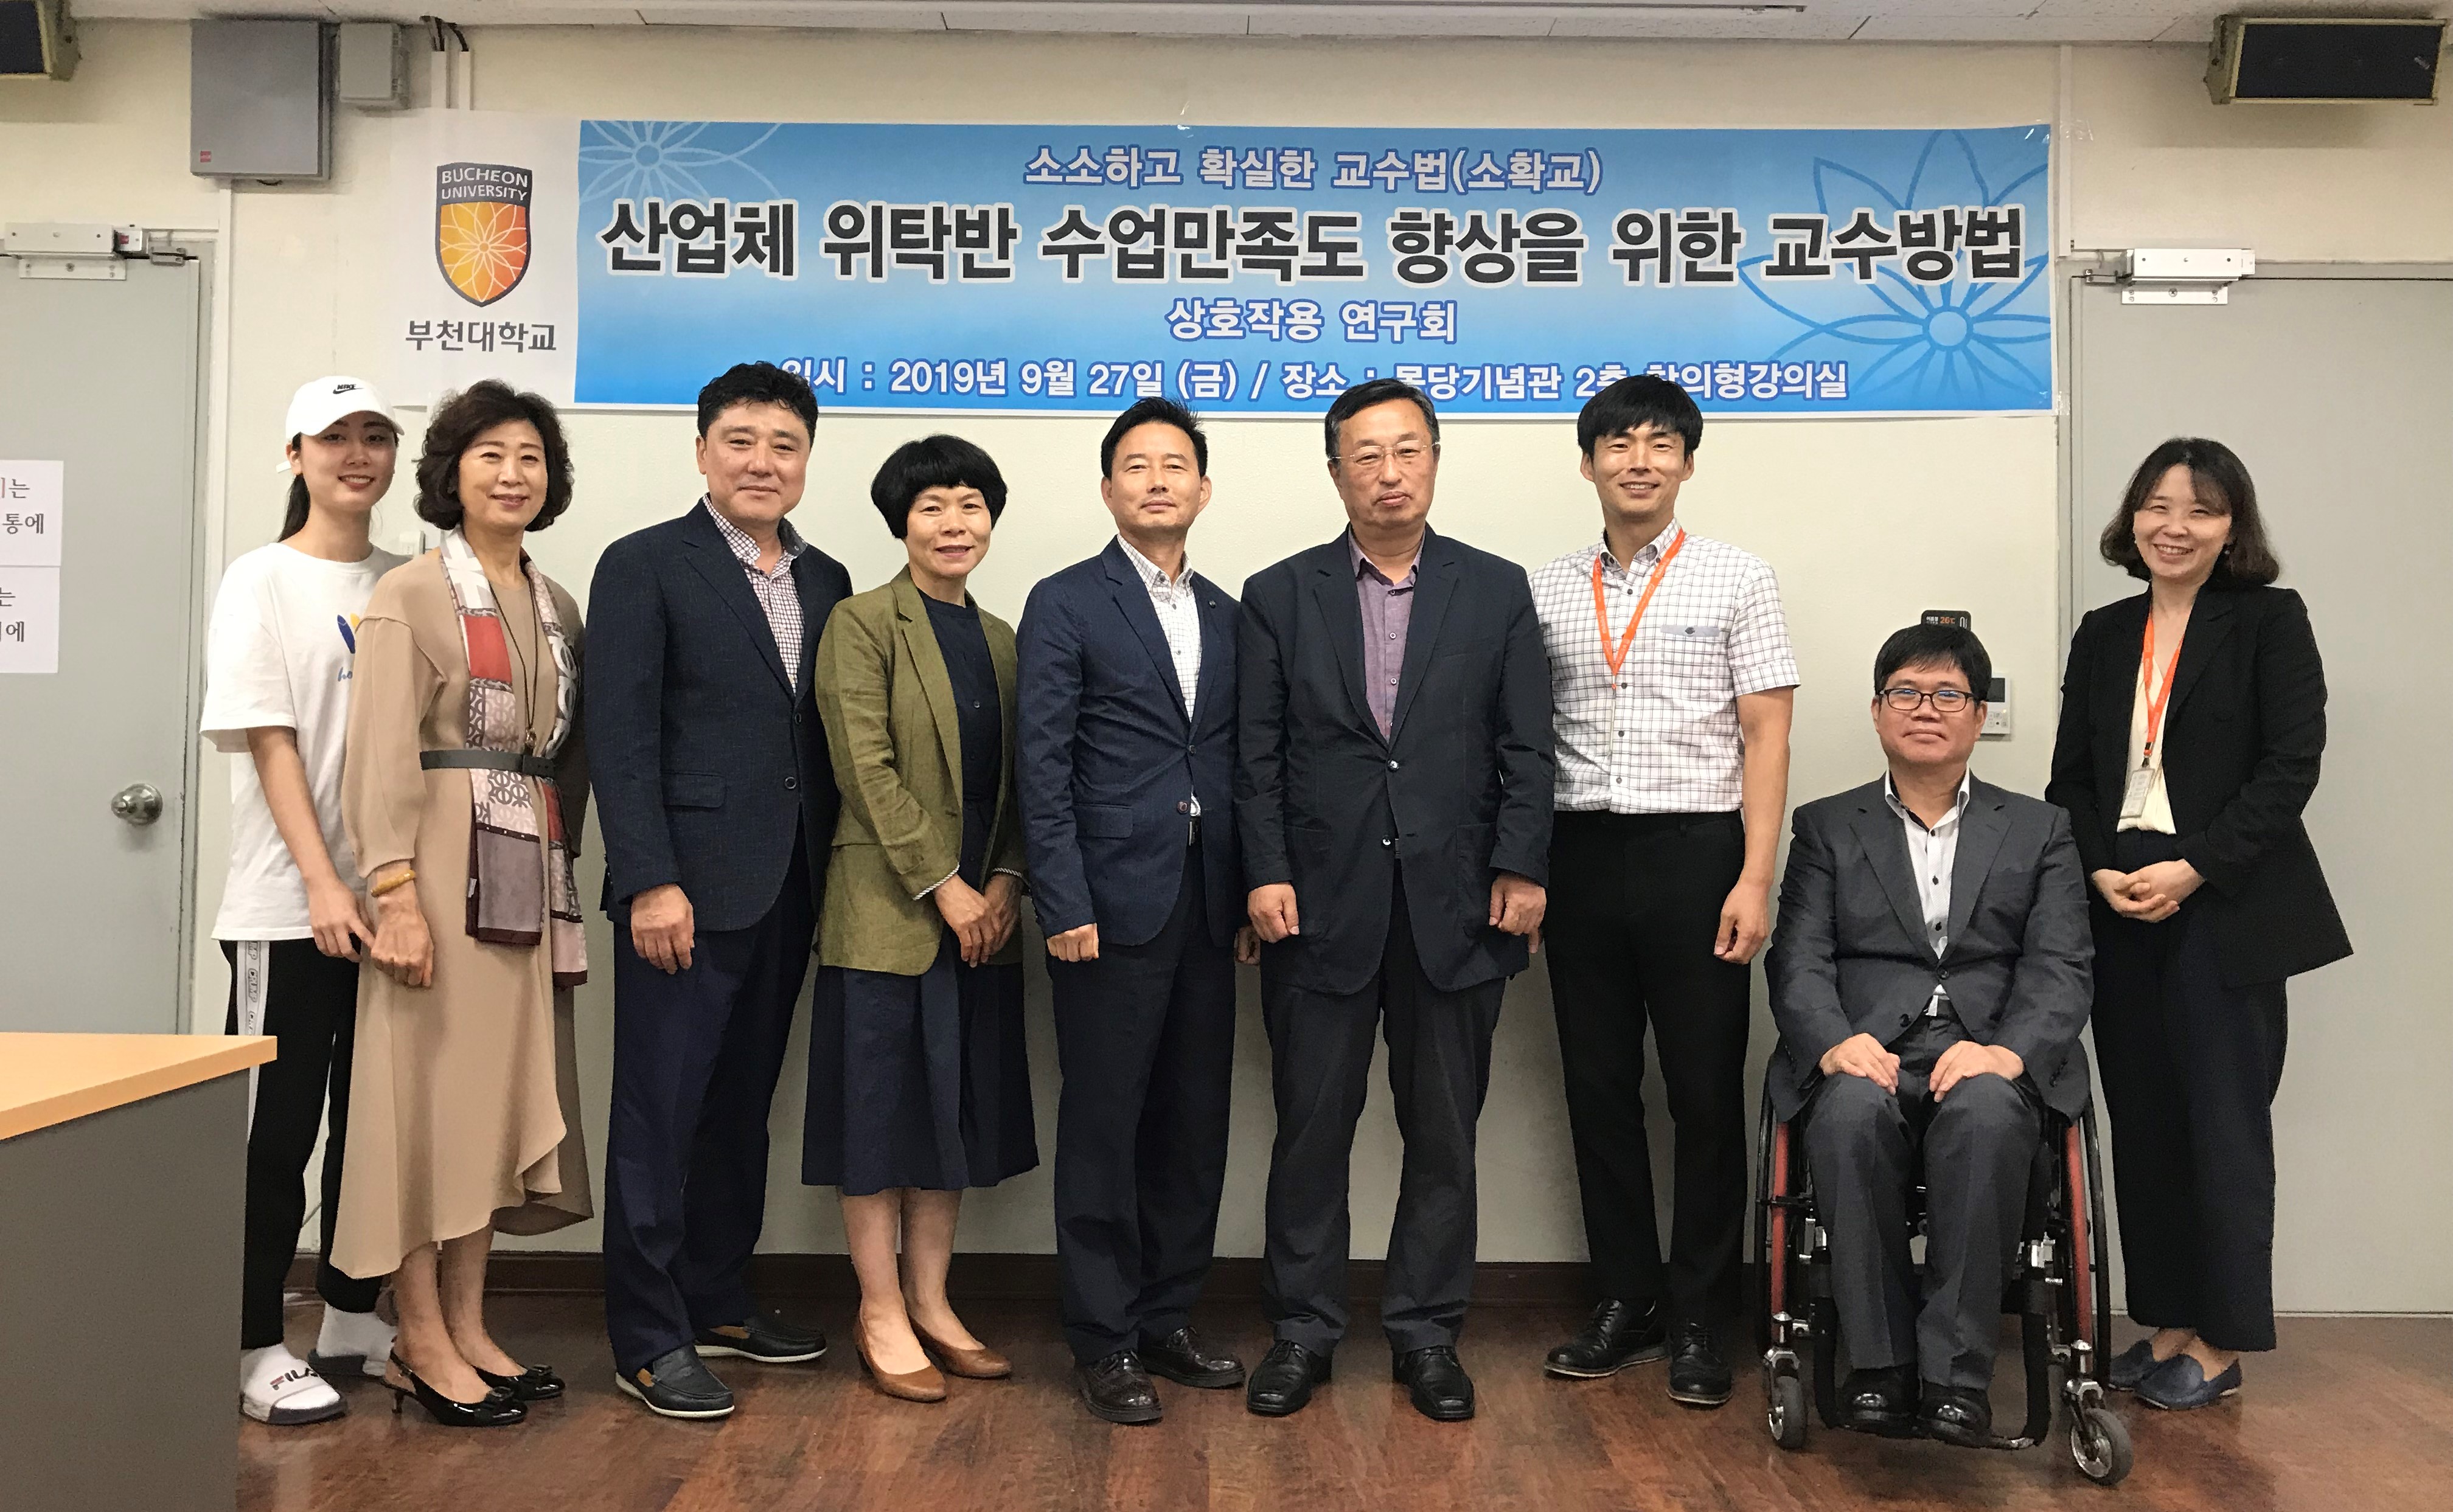 부천대학교 교수학습지원센터 “산업체 위탁반 수업만족도 향상을 위한 교수방법” 연구회 개최